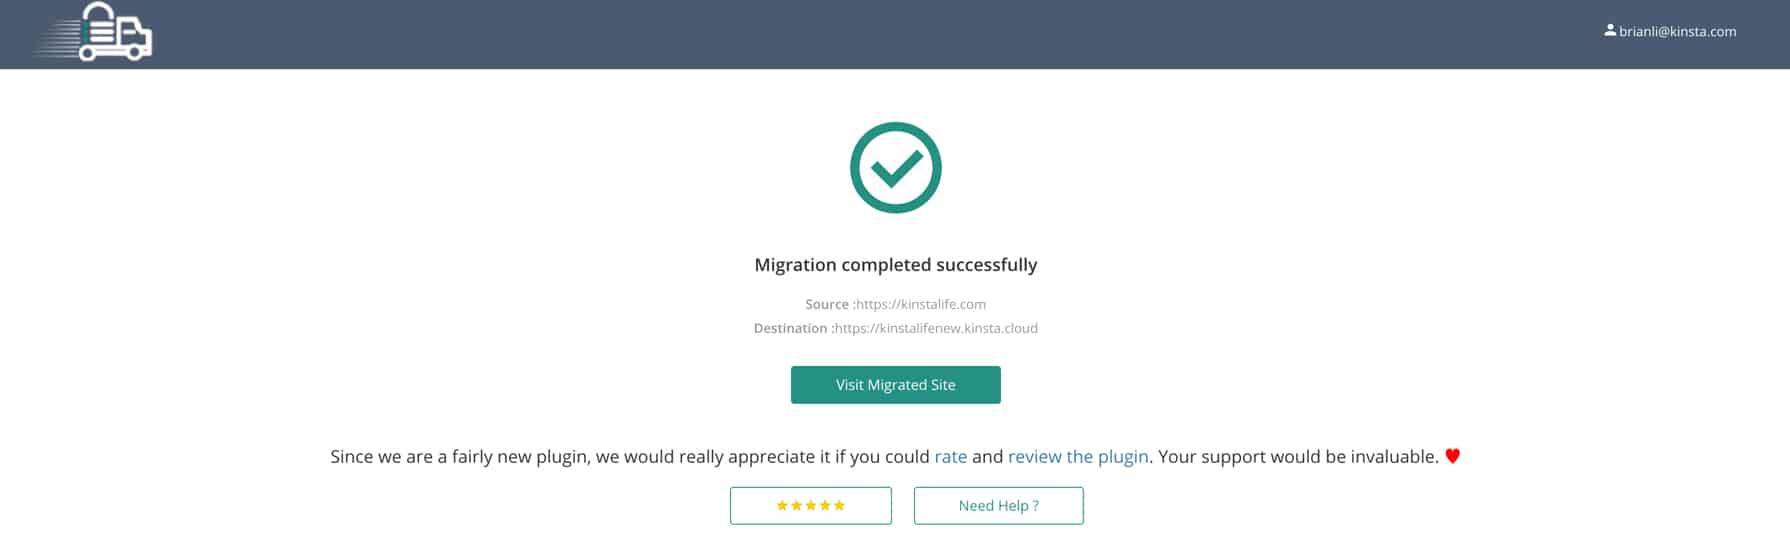 Uma migração bem sucedida do WordPress com Migrate Guru.